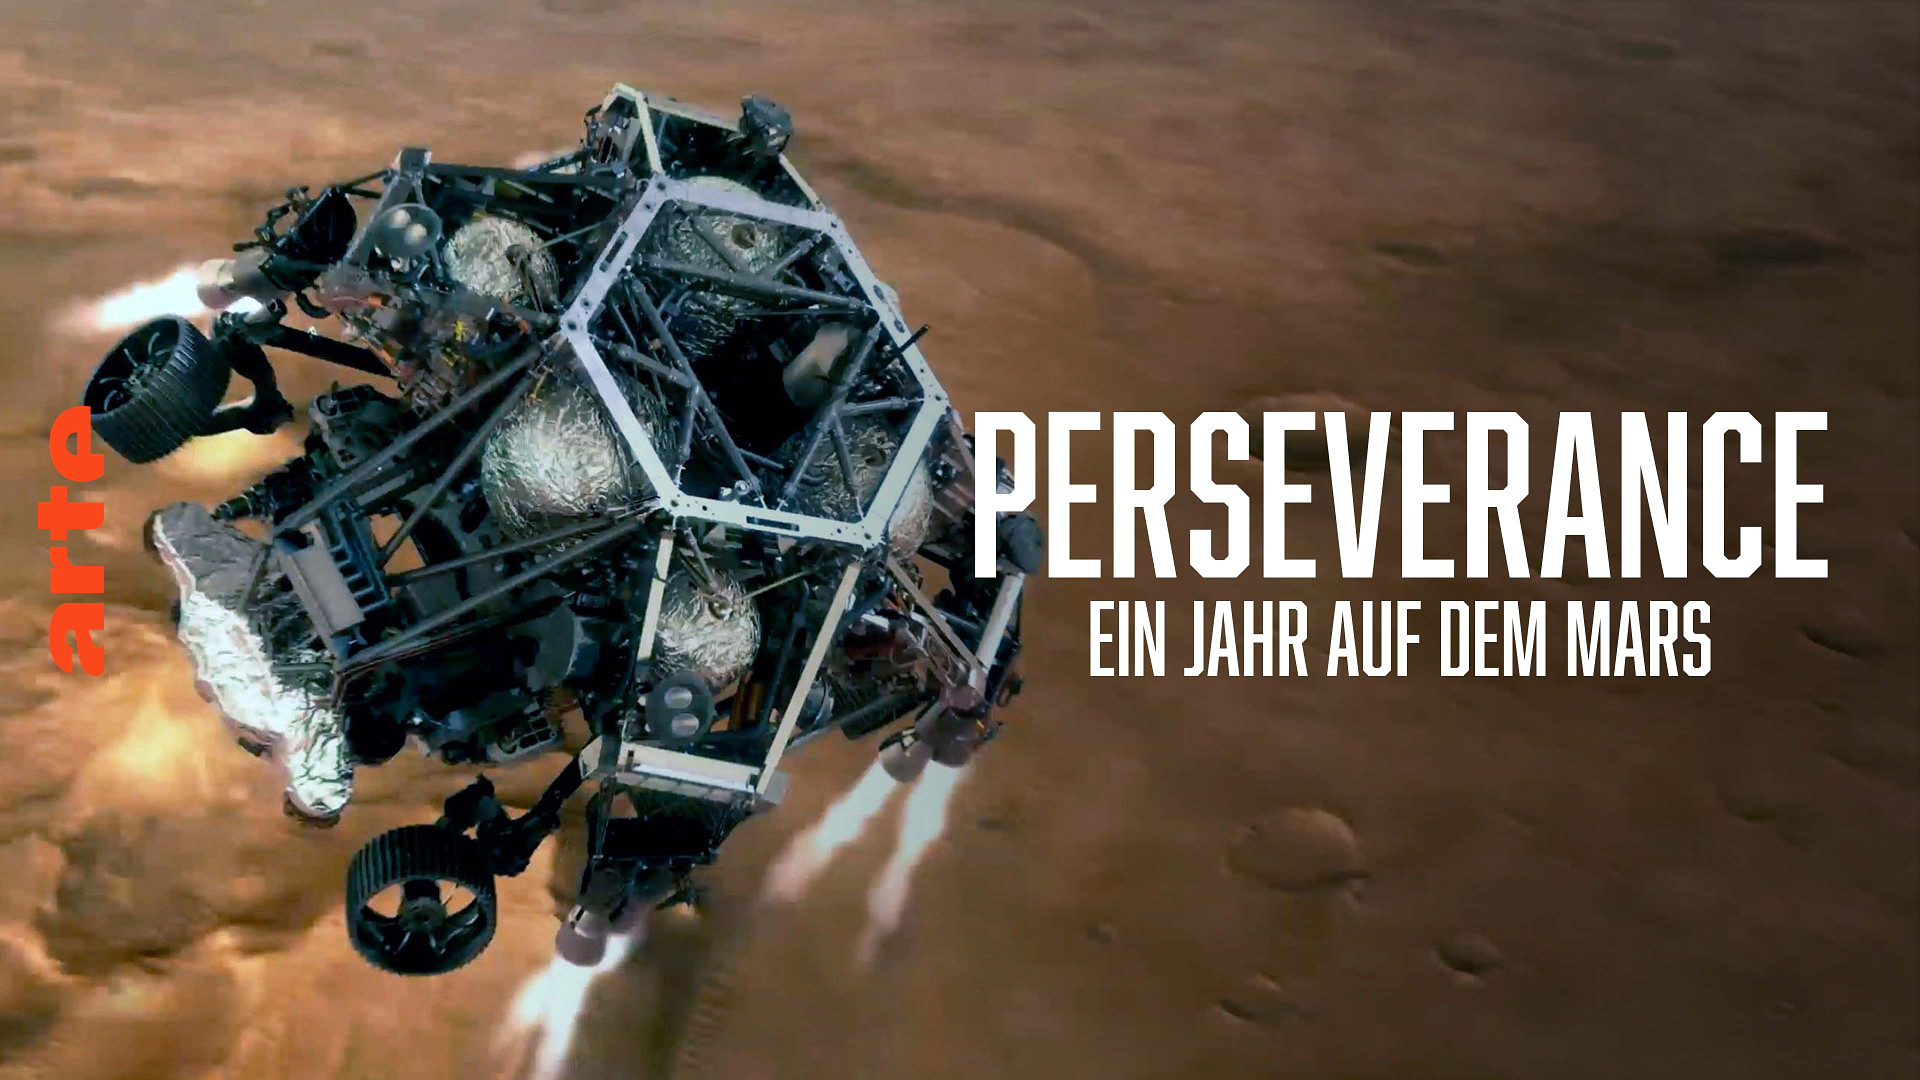 Perseverance - Ein Jahr auf dem Mars